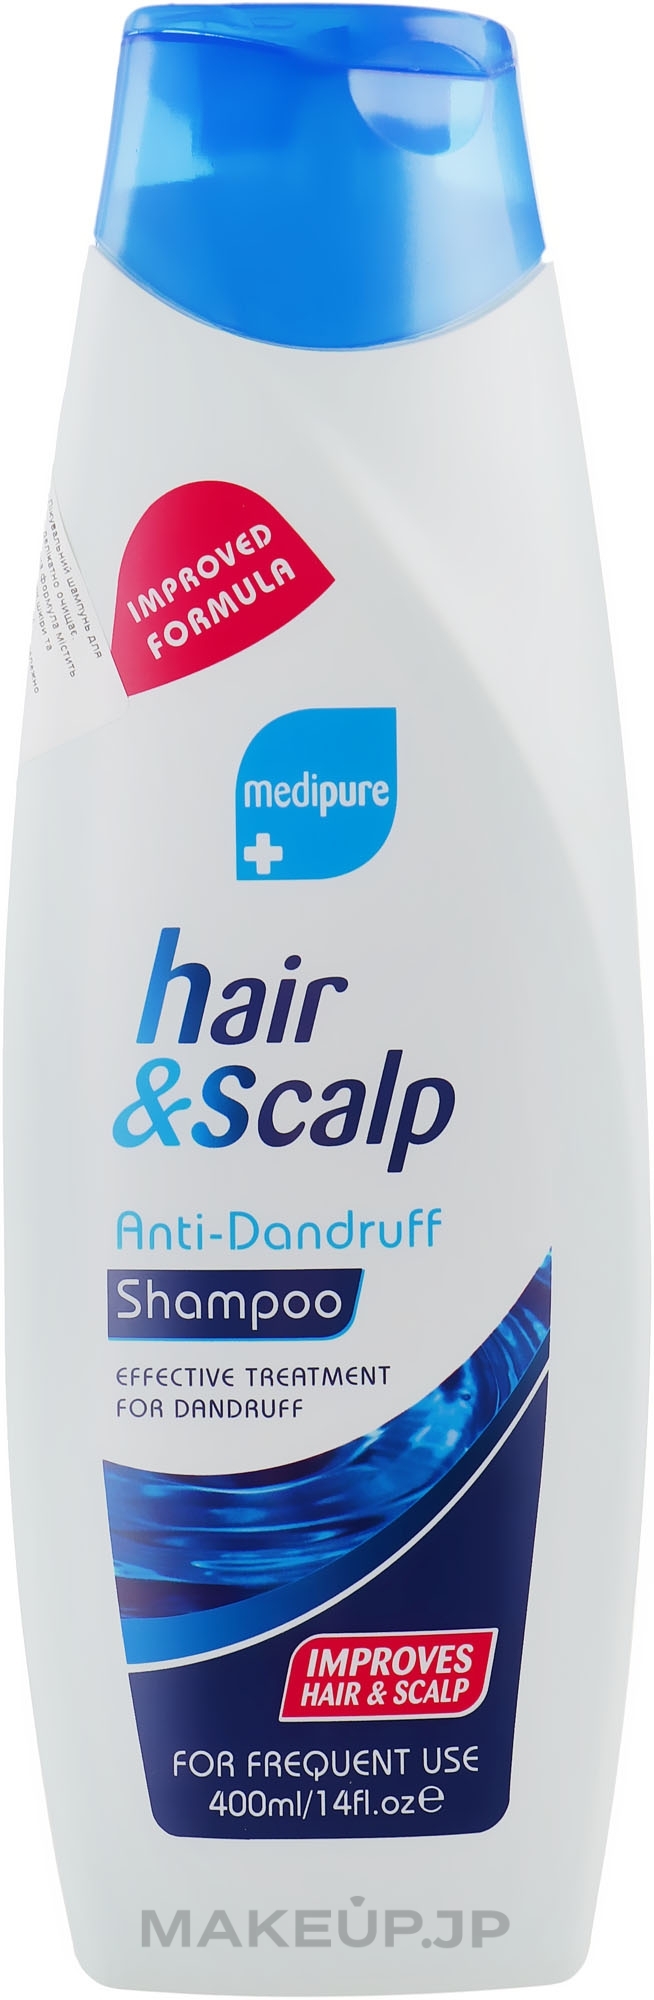 Anti-Dandruff Shampoo - Xpel Marketing Ltd Medipure Hair & Scalp Anti-Dandruff Shampoo — photo 400 ml